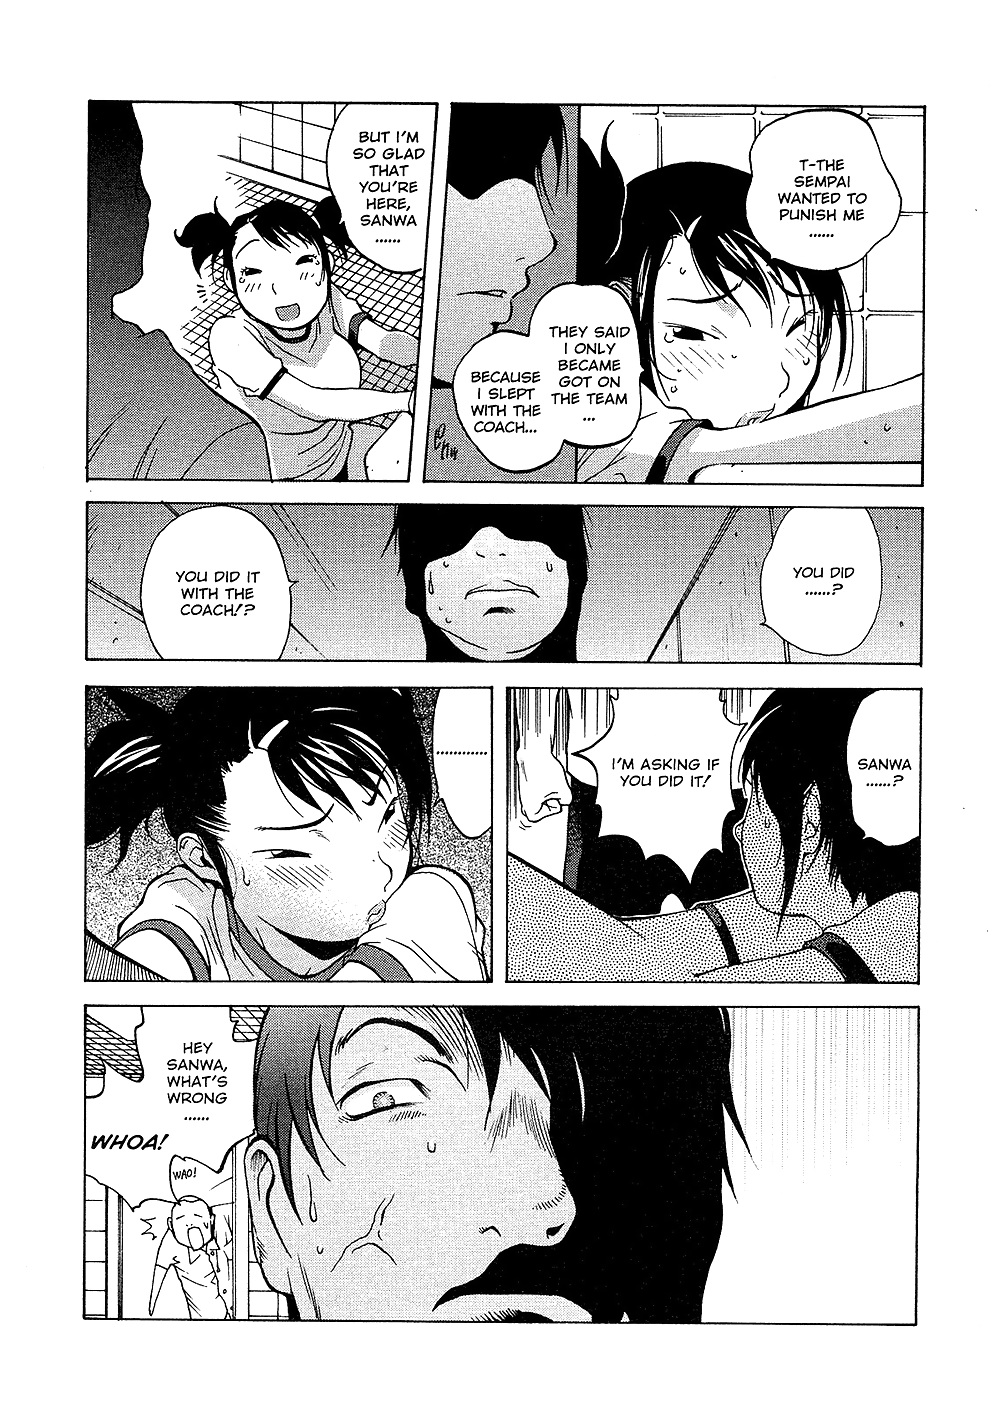 (comic hentai) yumisuke kotoyoshi erotic works #2
 #21623511